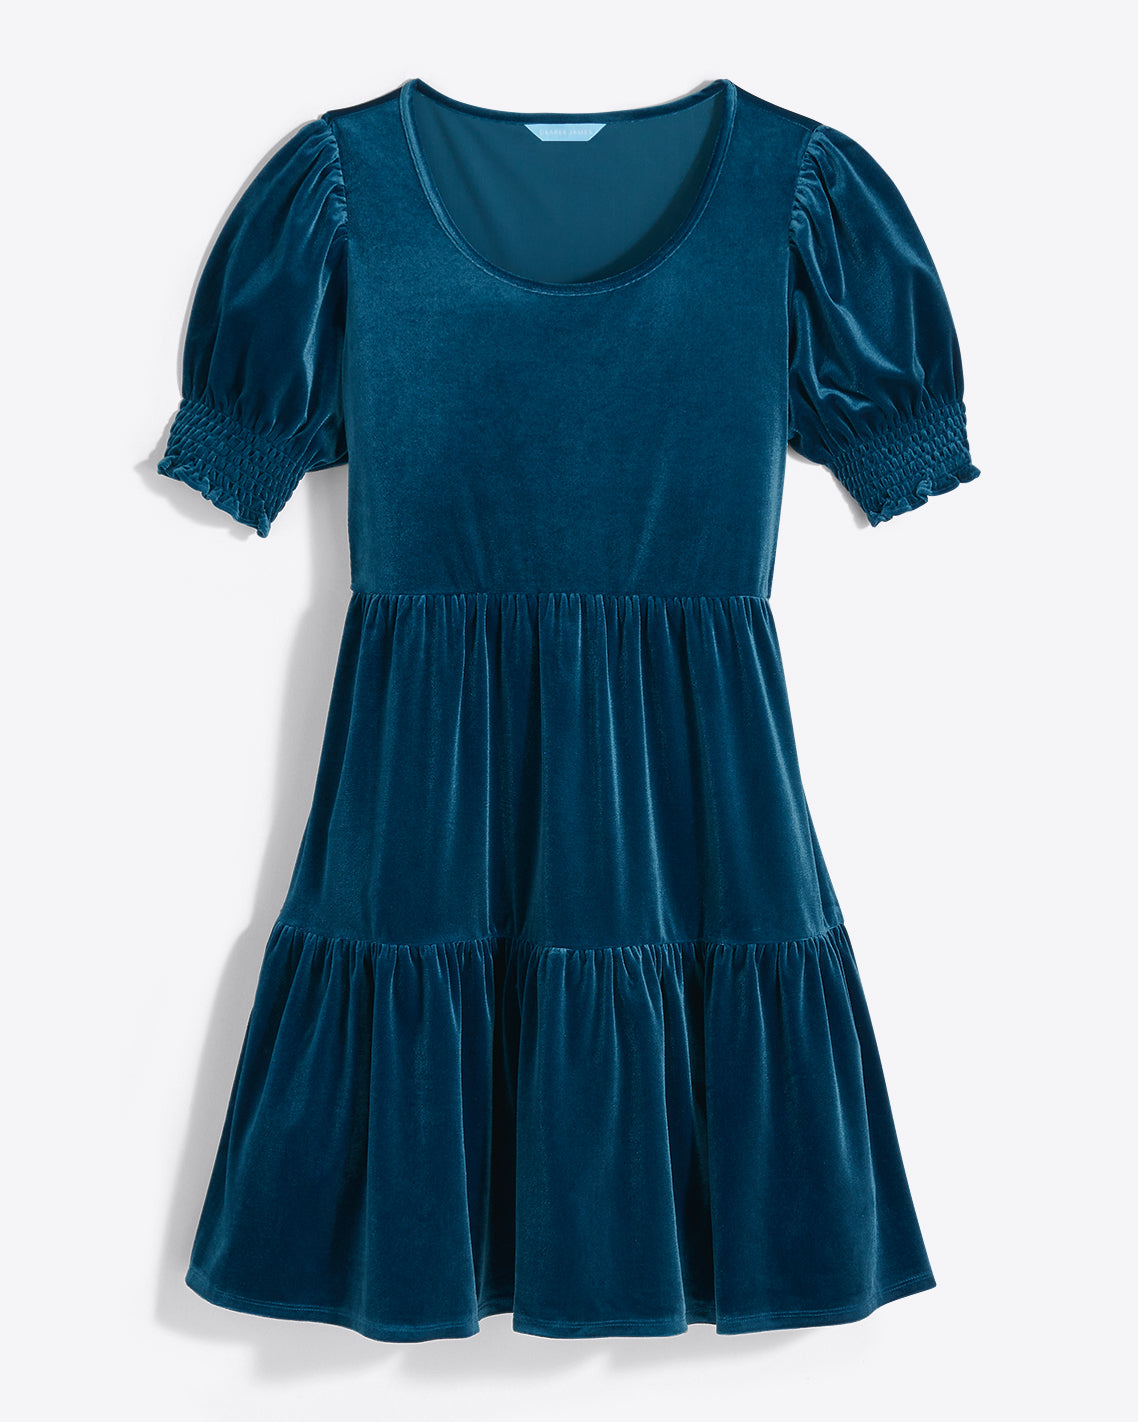 Lee Ann Dress in Blue Velvet